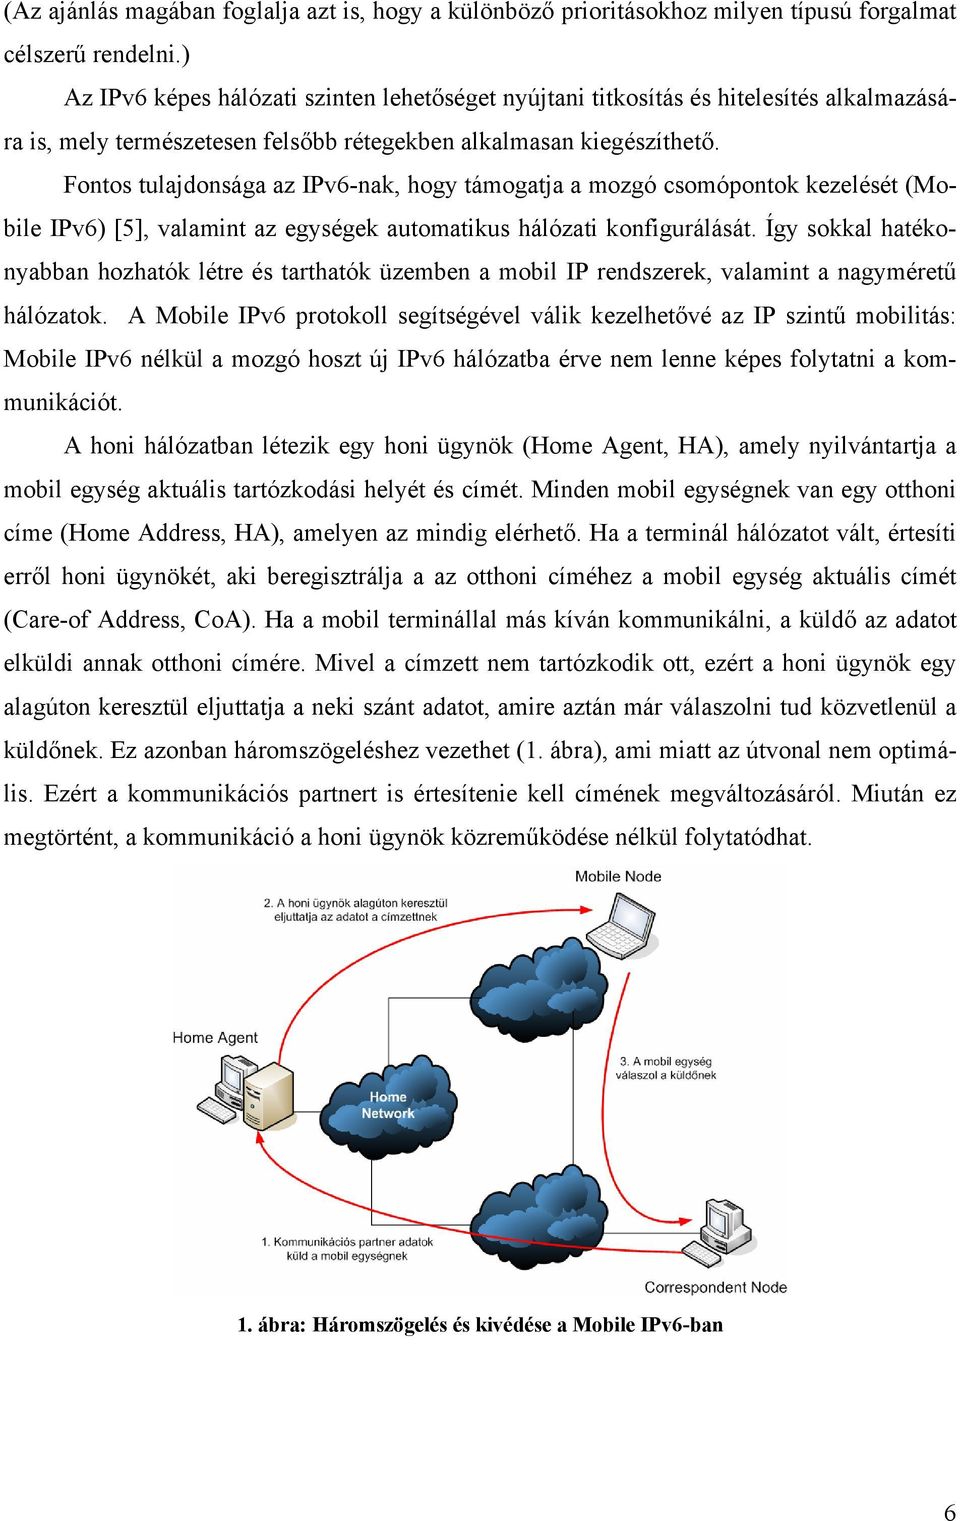 Fontos tulajdonsága az IPv6-nak, hogy támogatja a mozgó csomópontok kezelését (Mobile IPv6) [5], valamint az egységek automatikus hálózati konfigurálását.